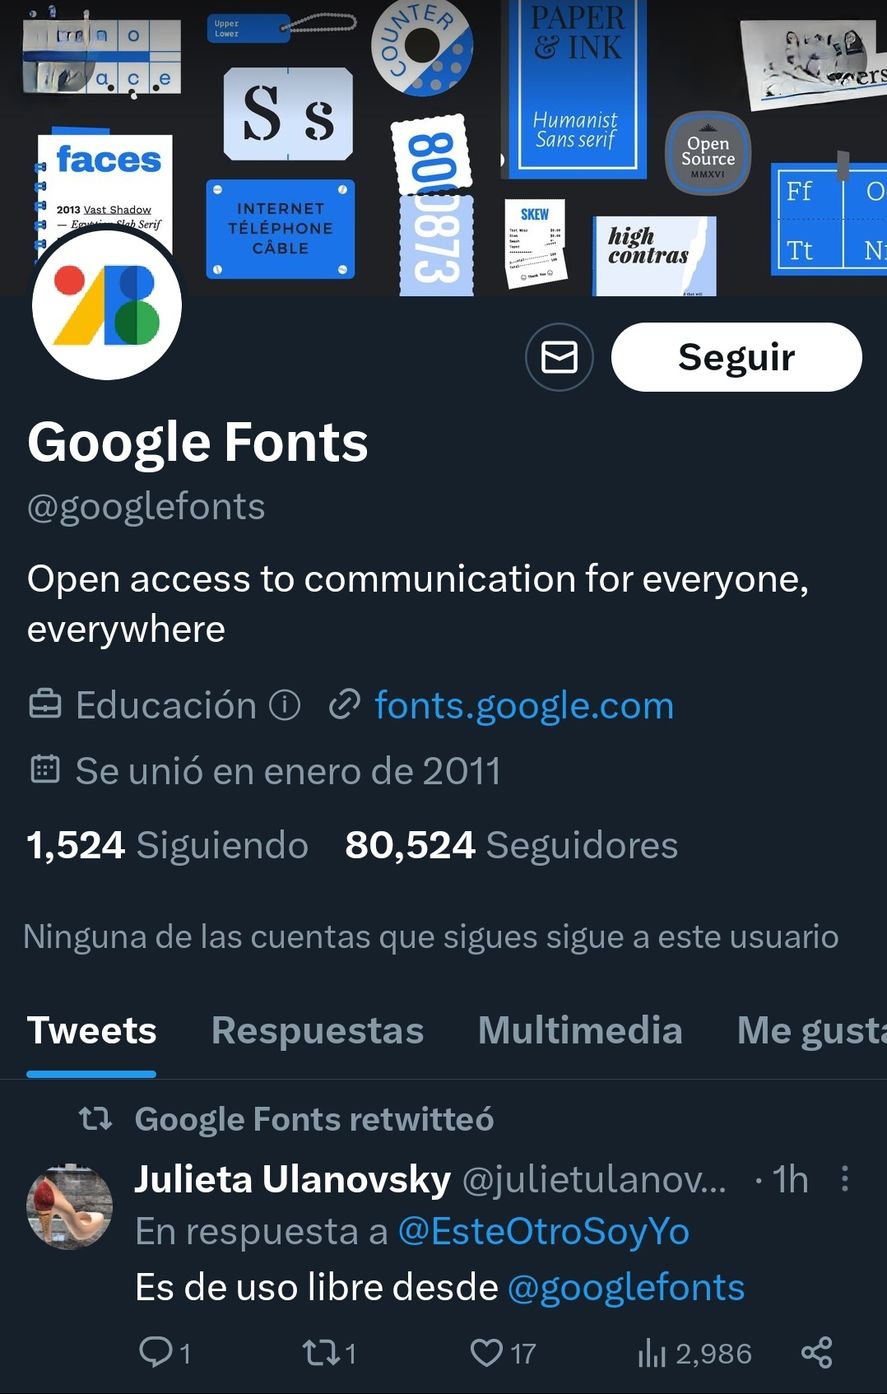 La cuenta de Google Fonts que provee de tipografías como la usada para los billetes de 2 mil pesos argentinos, llamada Montserrat y diseñada por Julieta Ulanovsky 